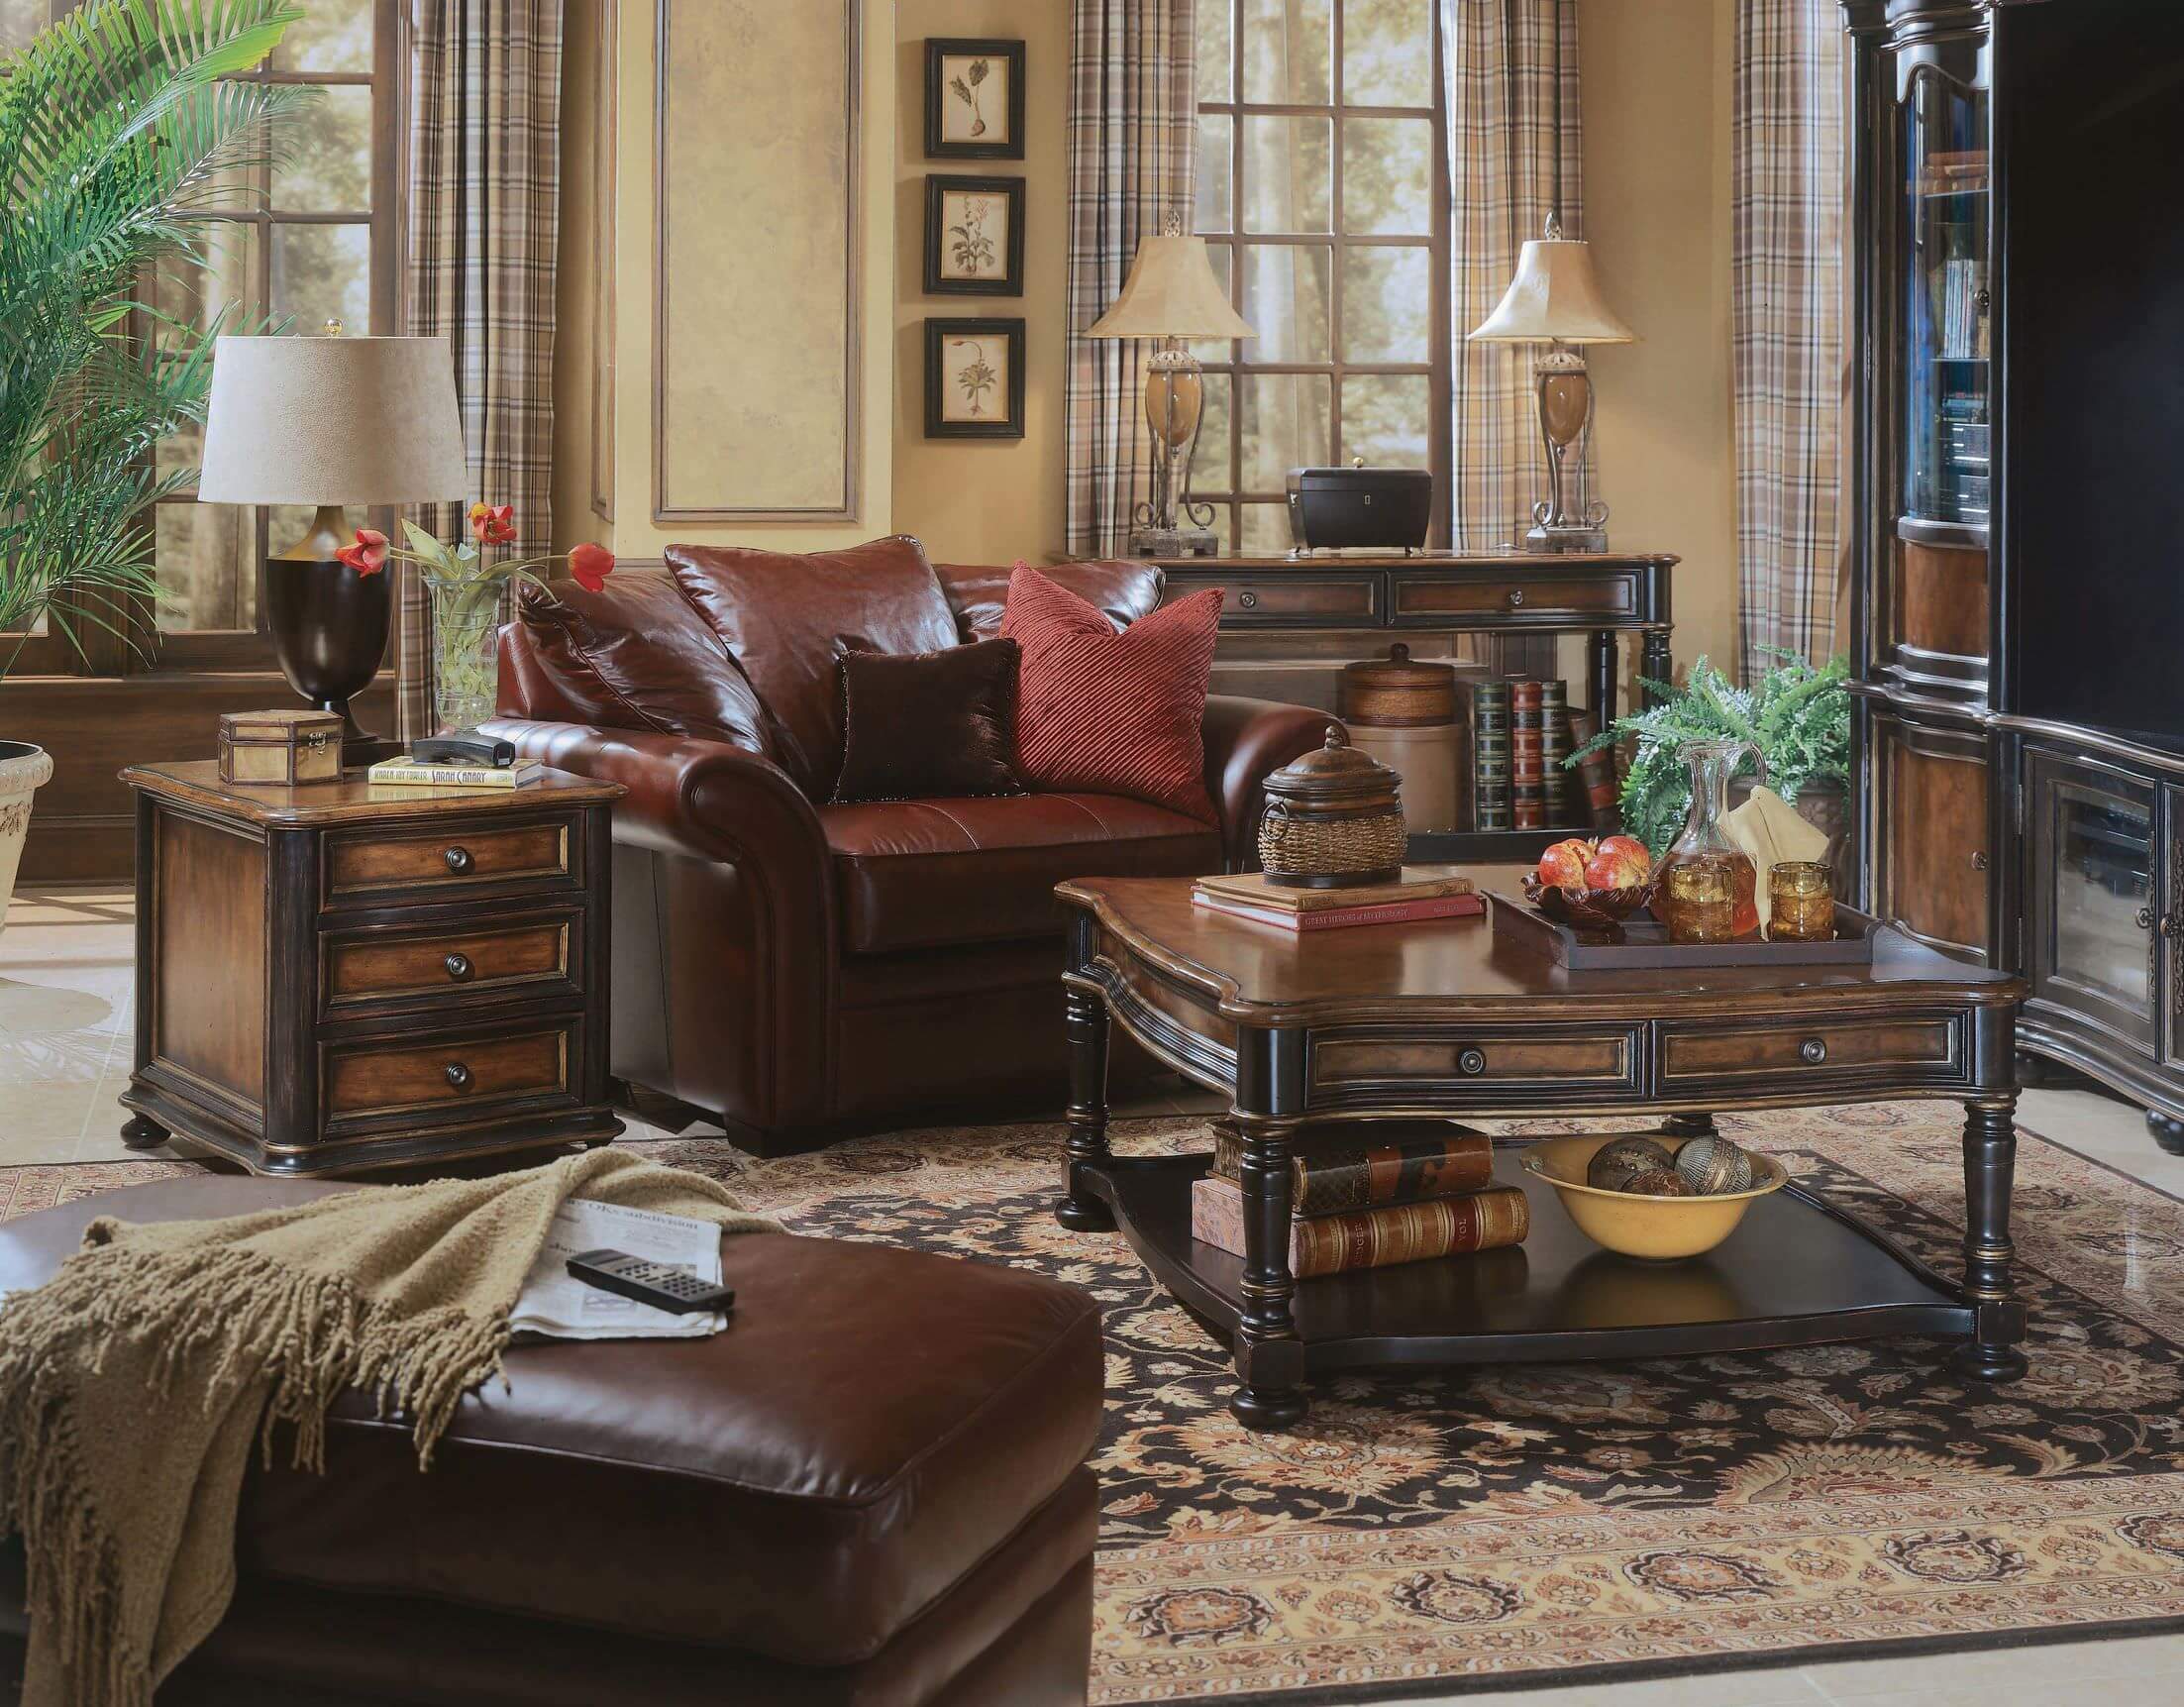 这间客厅以木质基调为特色。房间提供舒适的座椅和一个经典的区域地毯。